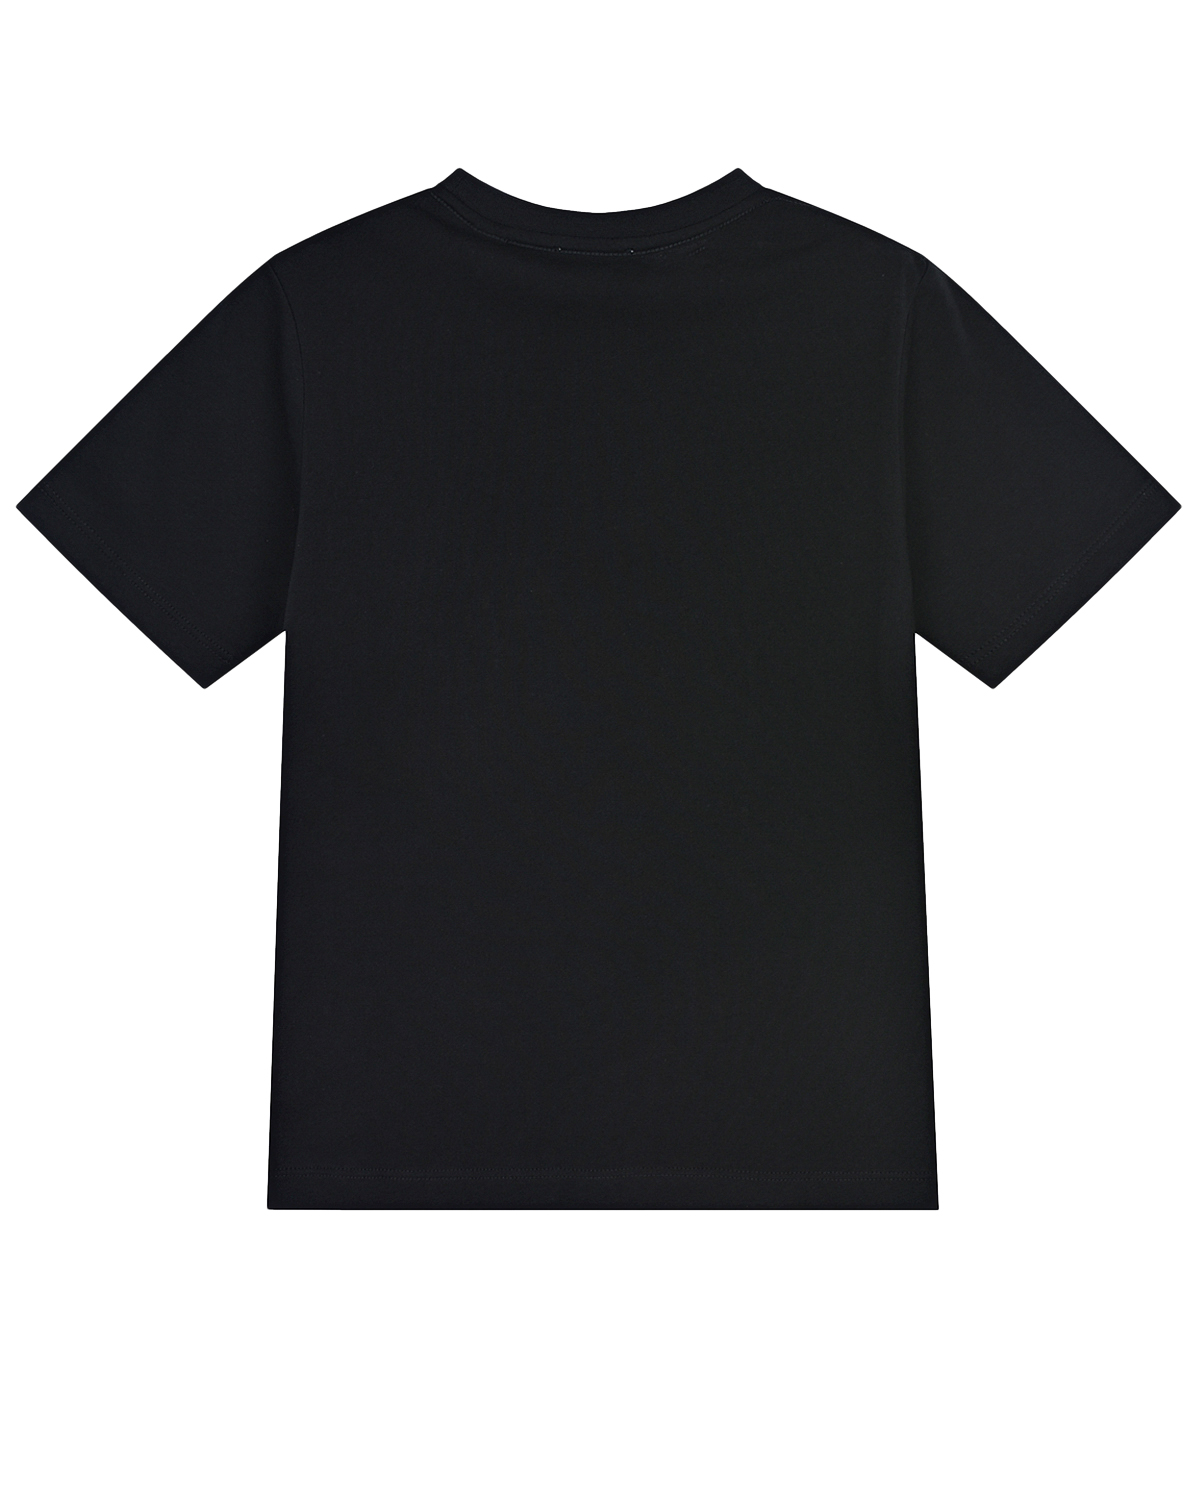 Черная футболка с белым принтом "burberry london england" детская, размер 128, цвет черный - фото 2